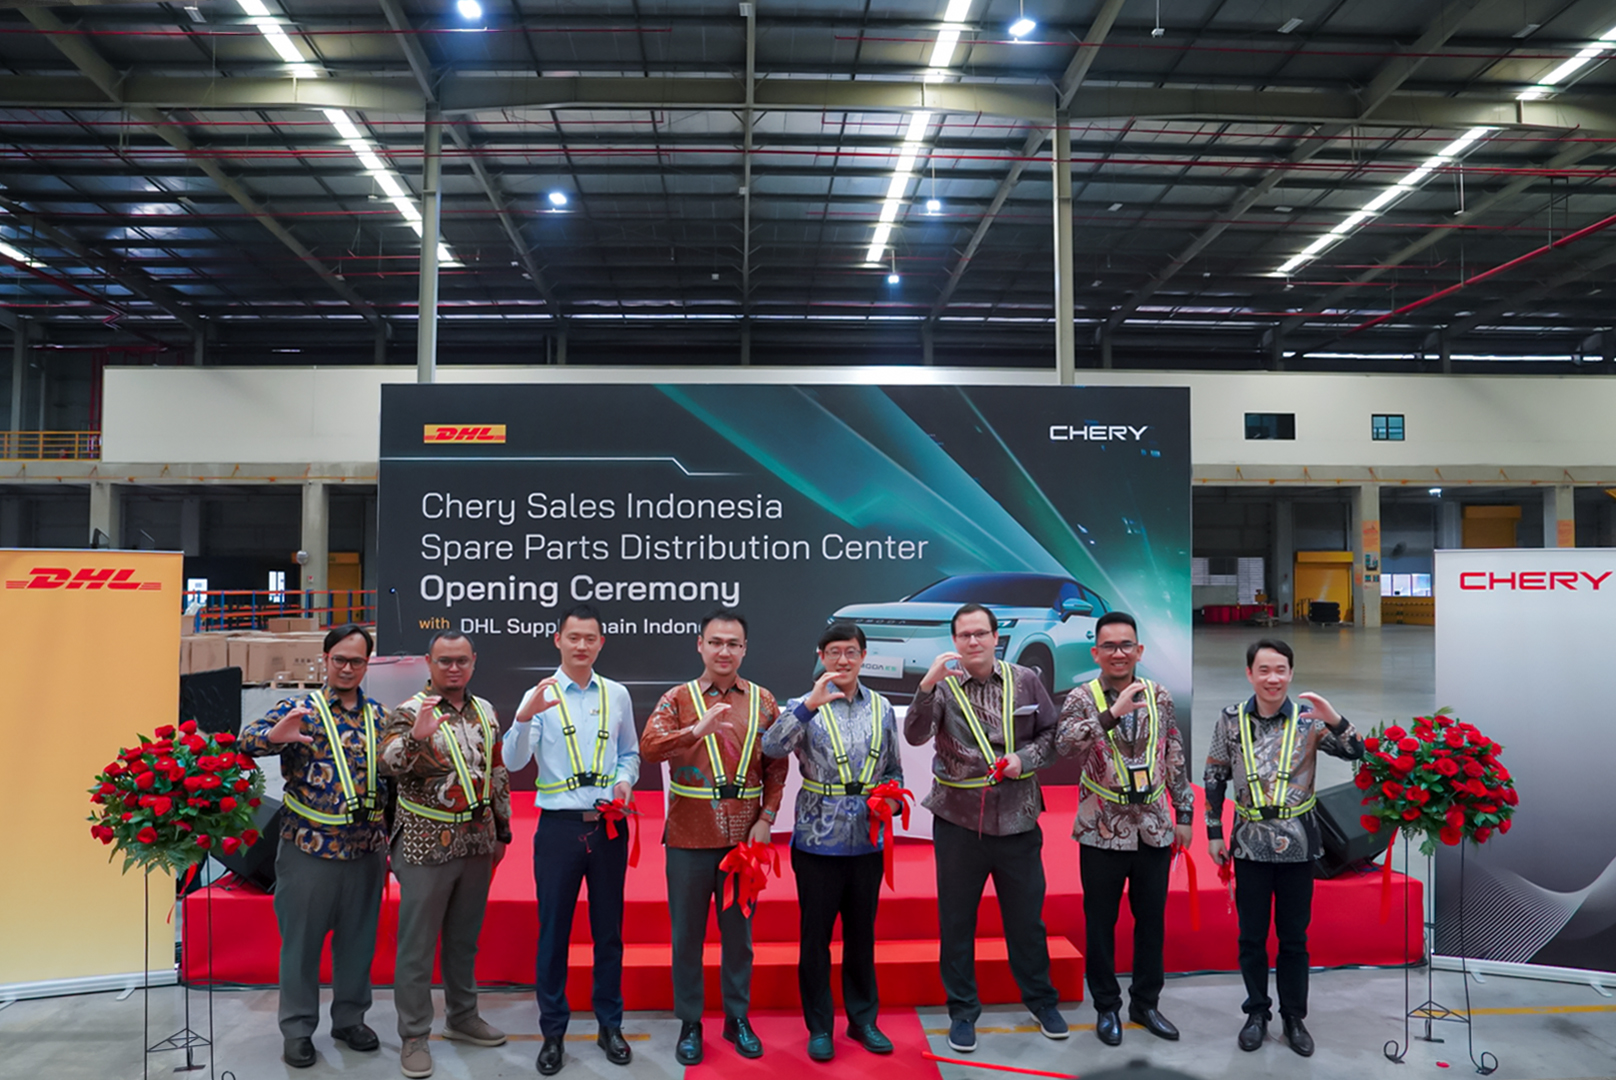 peresmian kerjasama antara Chery dan DHL Supply Chain Indonesia dalam pendistribusian Suku Cadang di Indonesia - apakabar.co.id